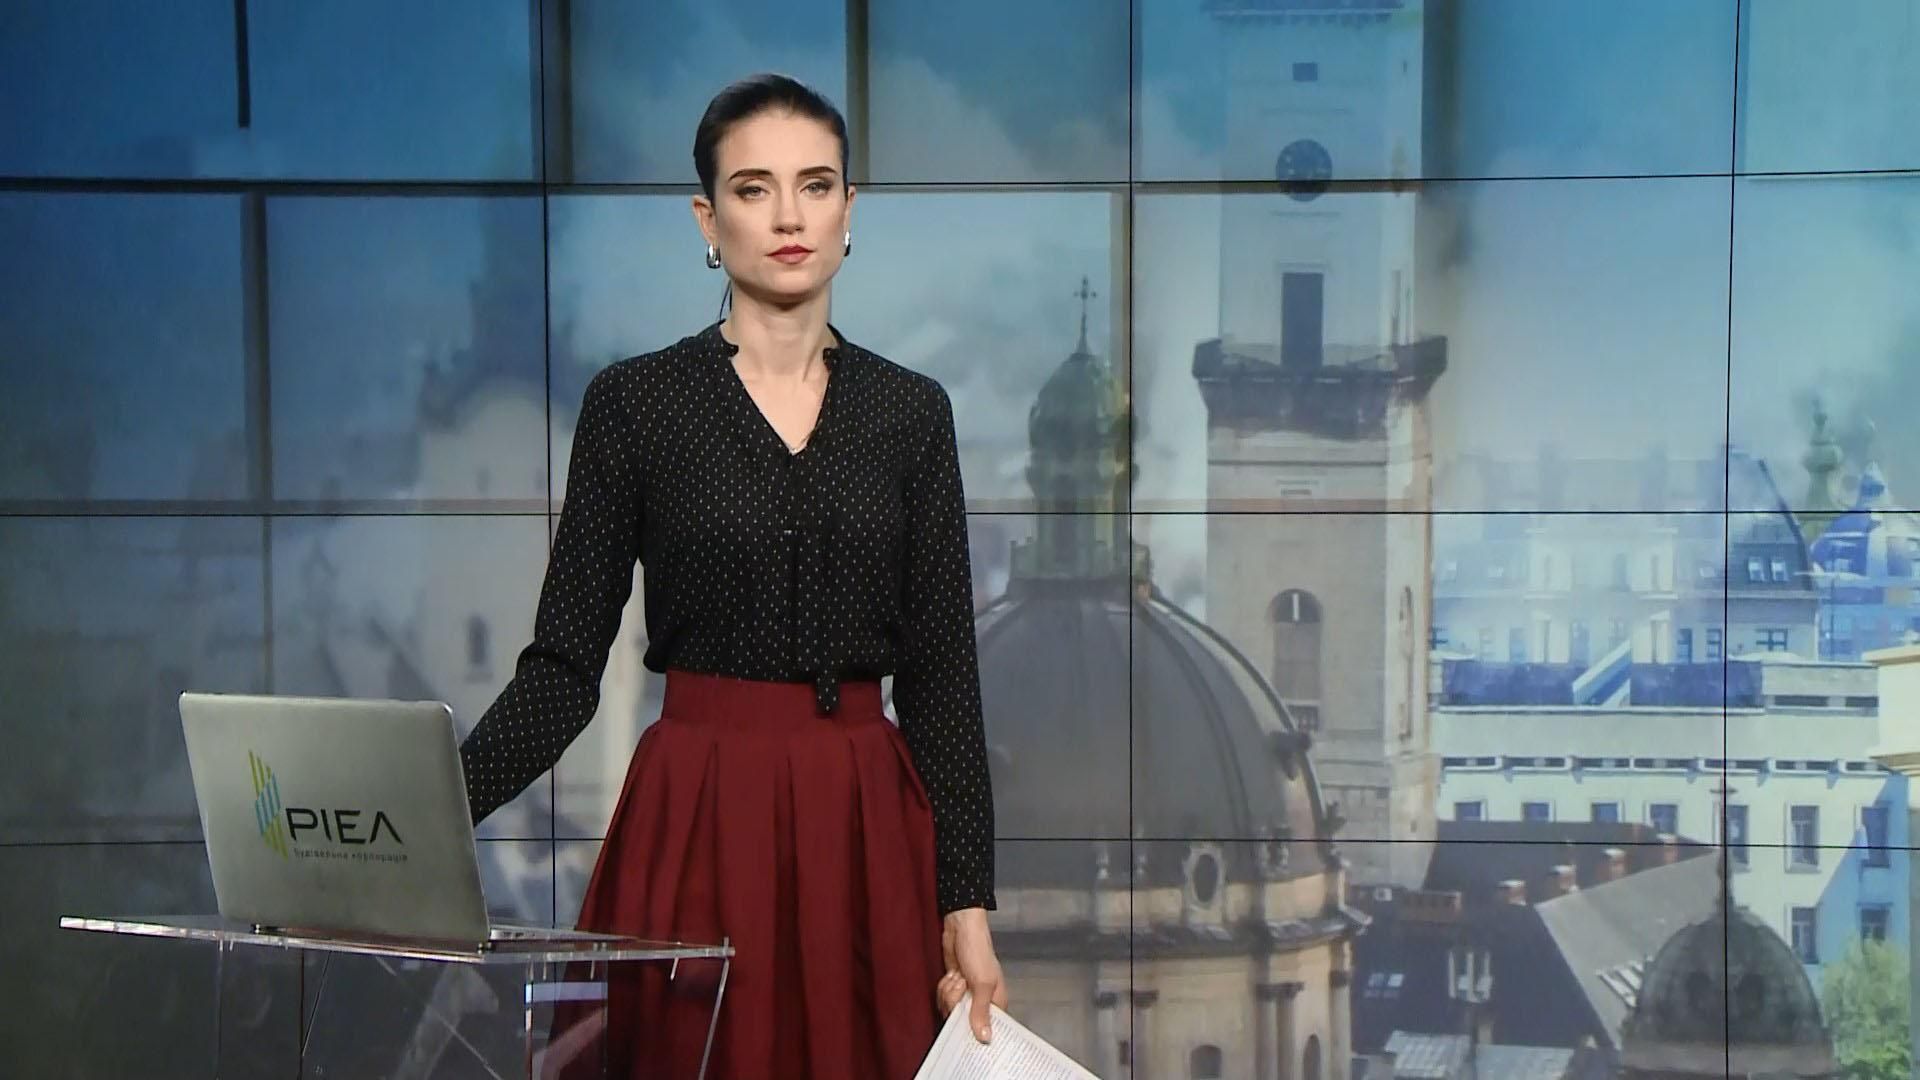 Выпуск новостей за 12:00: Признание Эрнста во лжи на российском ТВ. Массовые протесты в Чехии